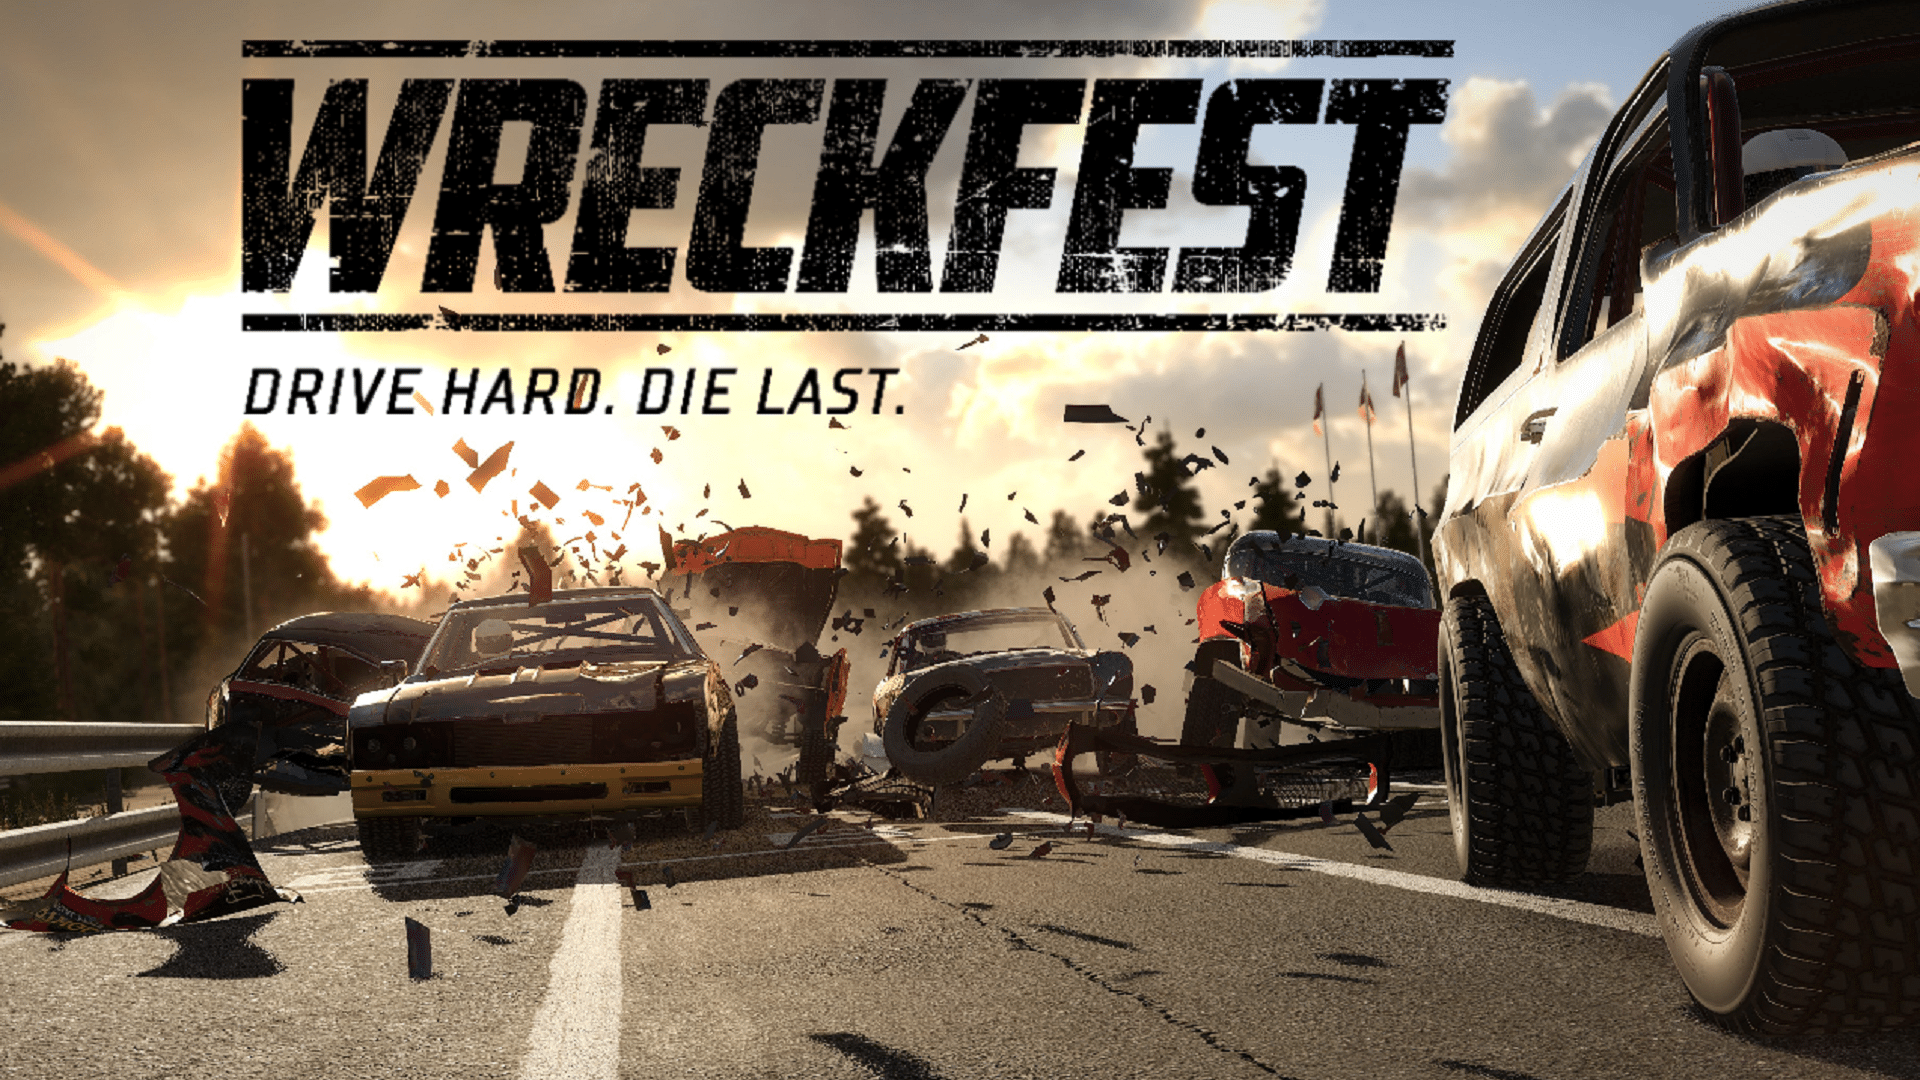 Wreckfest event